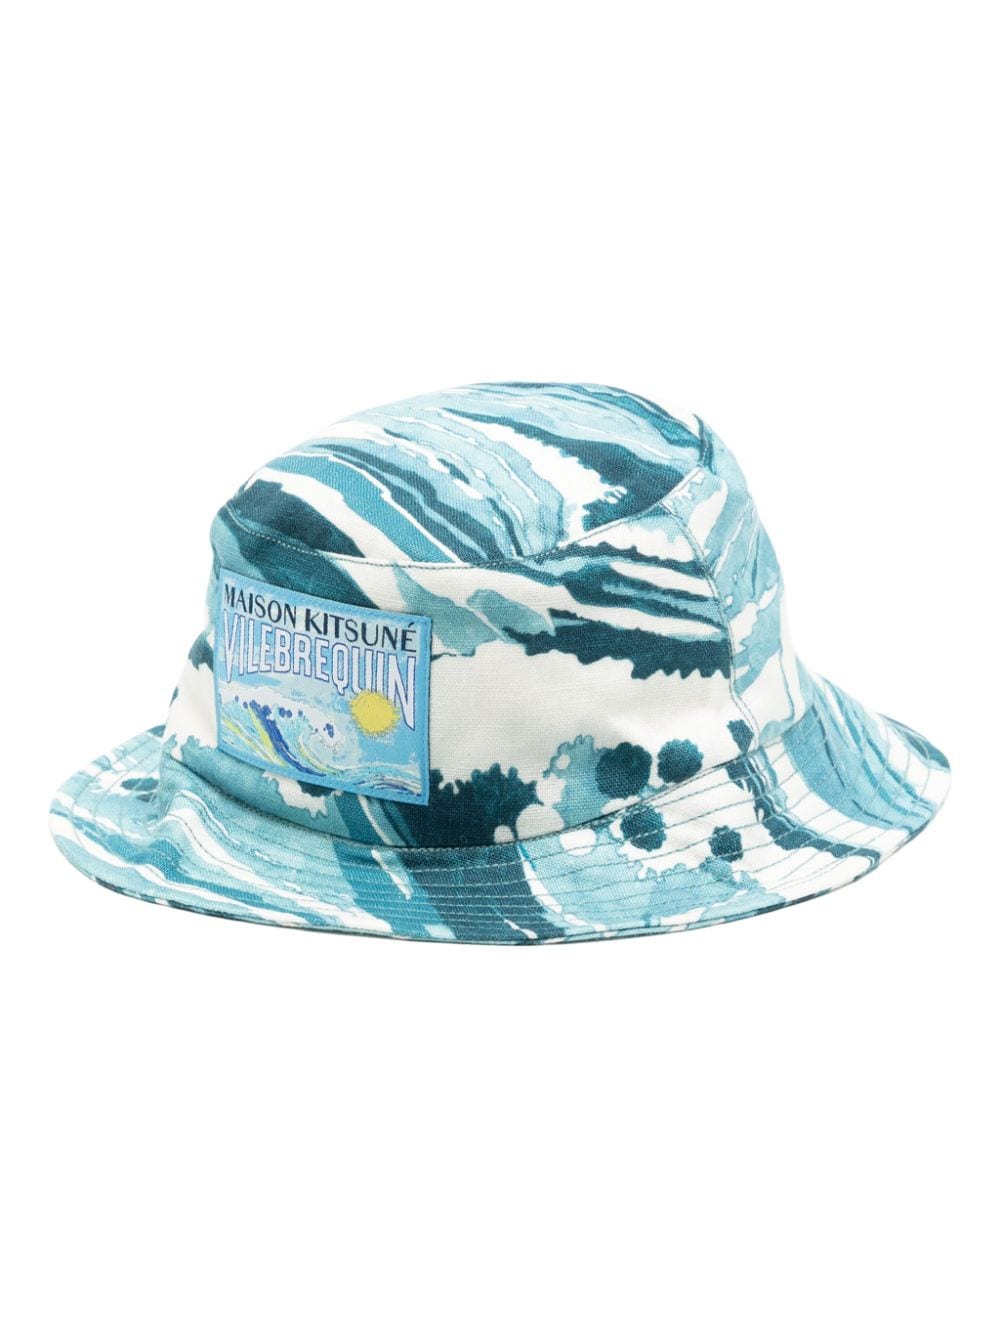 Maison Kitsuné x Vilebrequin tie-dye bucket hat - Blue von Maison Kitsuné